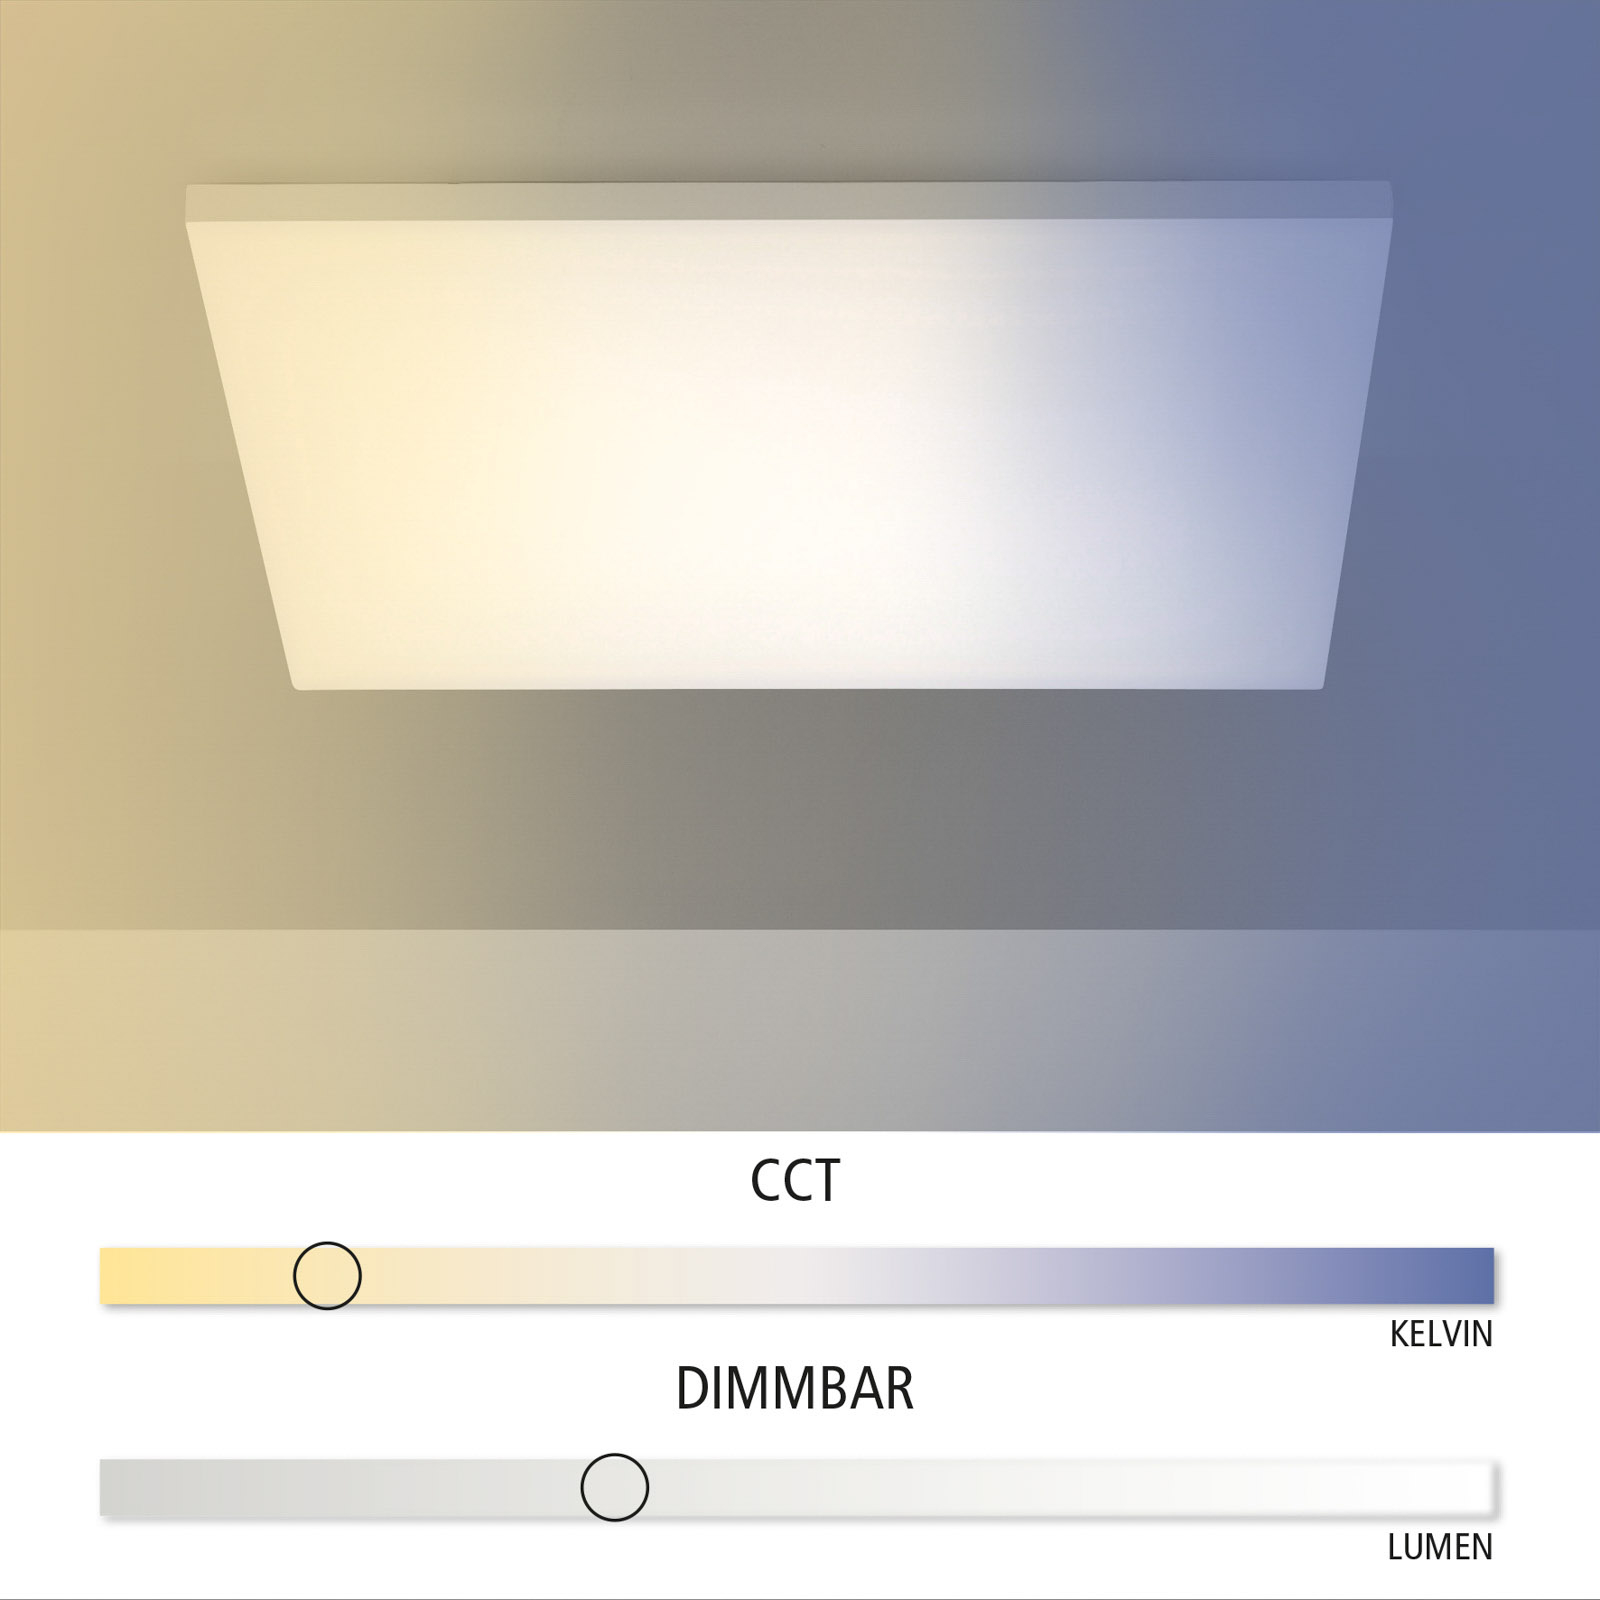 Candeeiro de teto LED Canvas, branco sintonizável, 60 cm